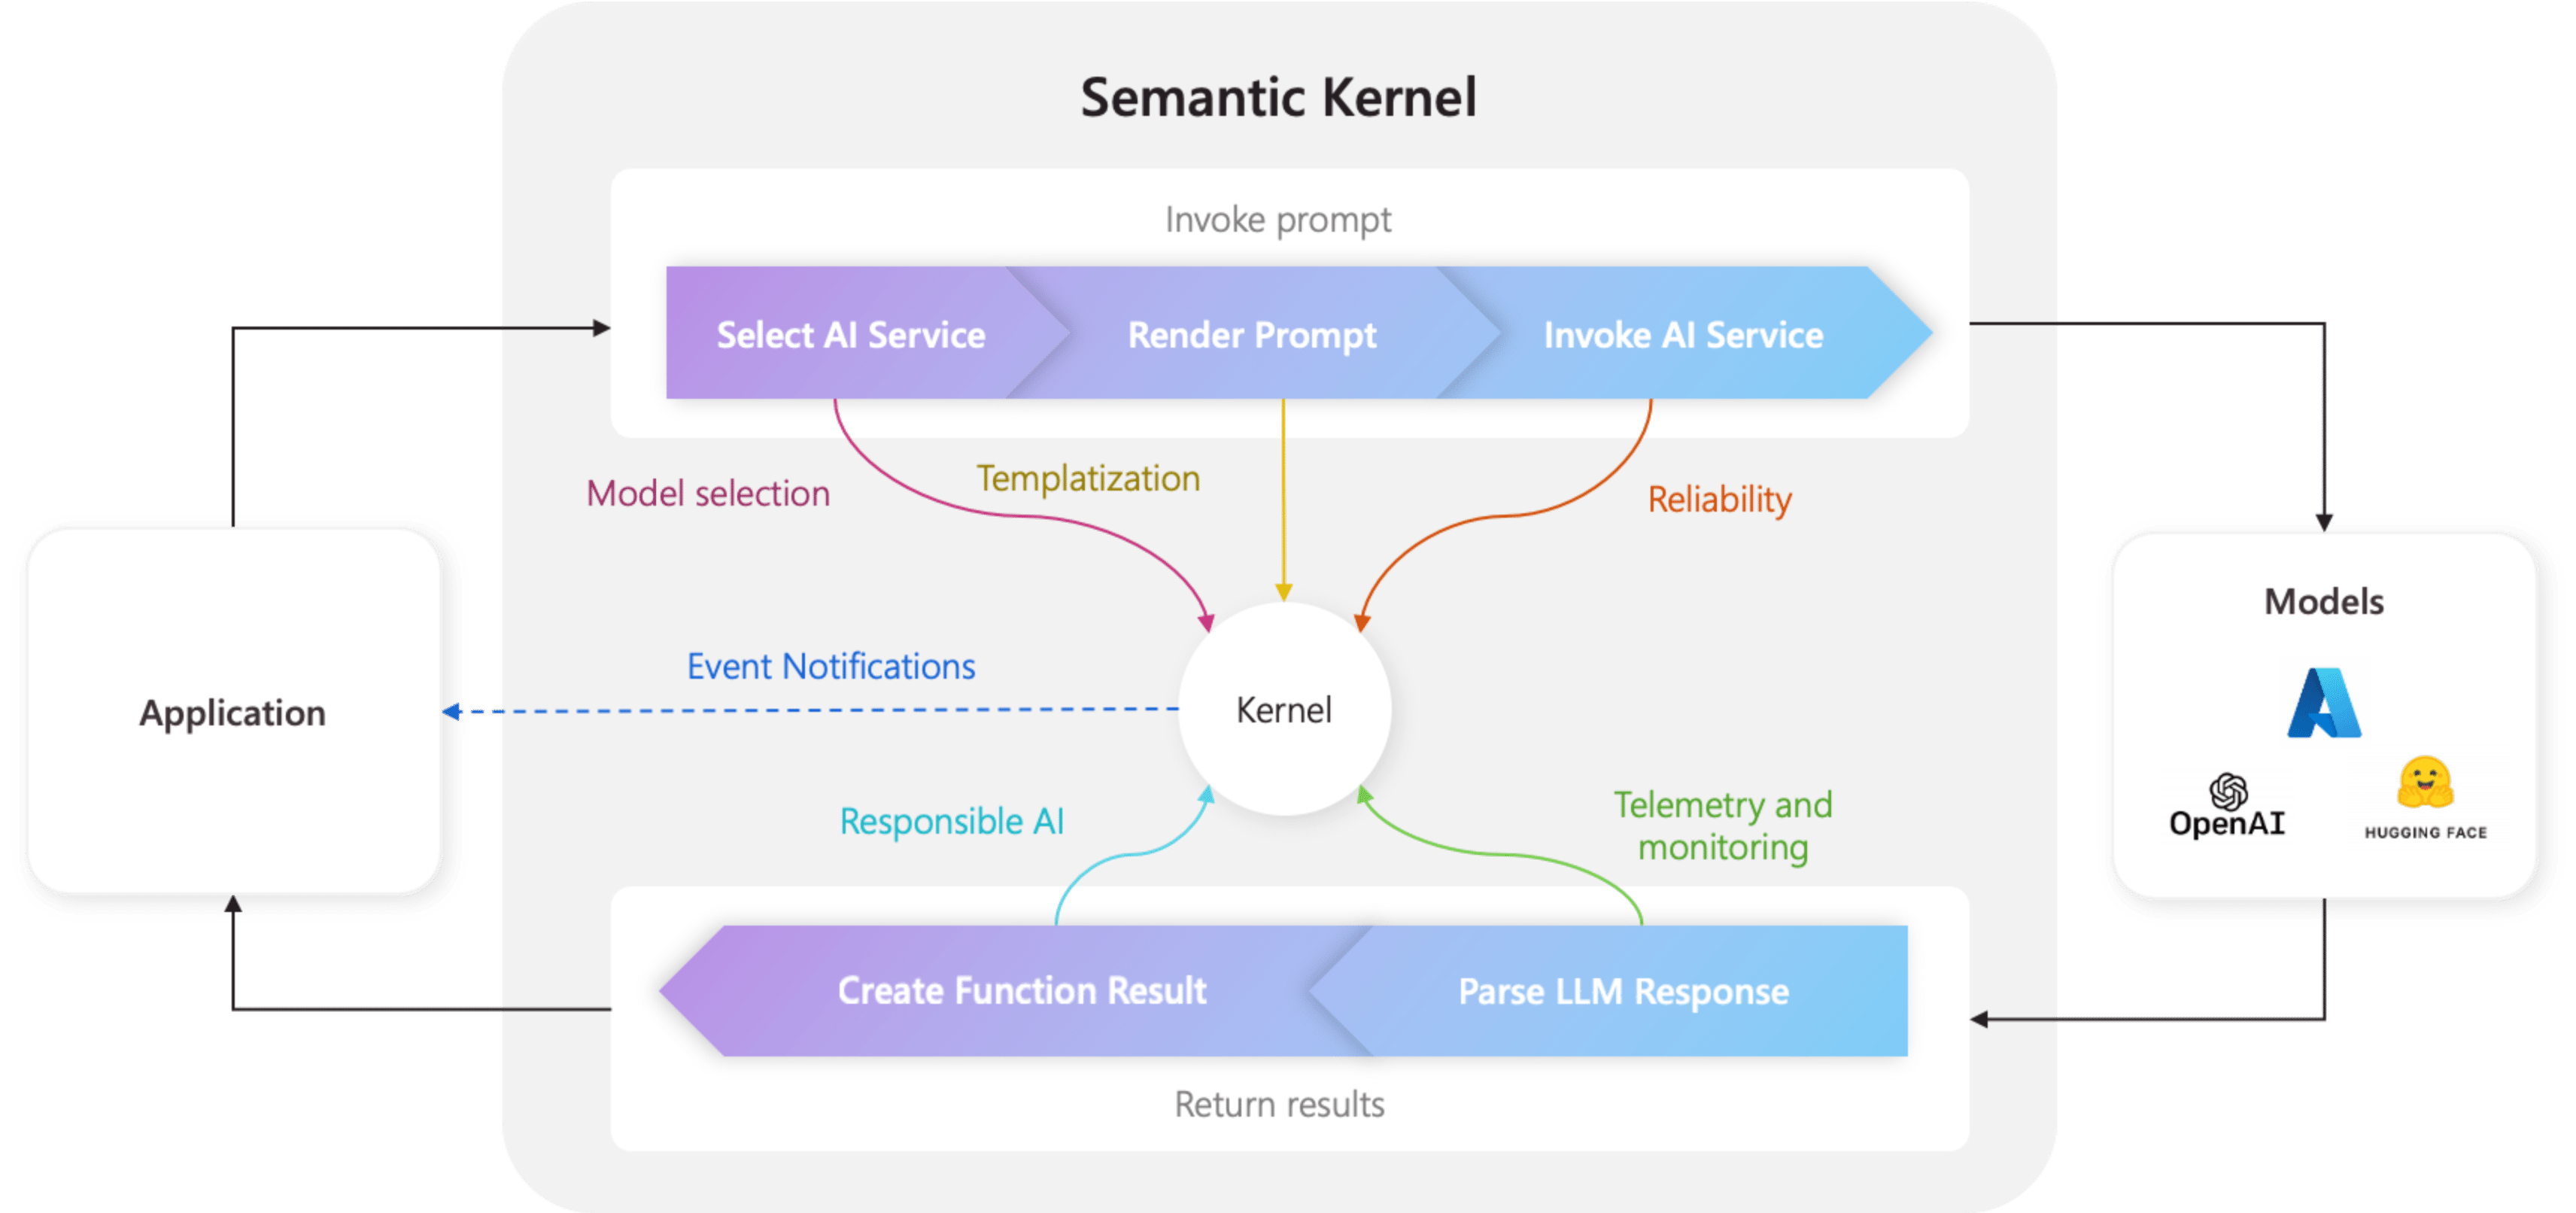 Kärnan står i centrum för allt i semantisk kernel